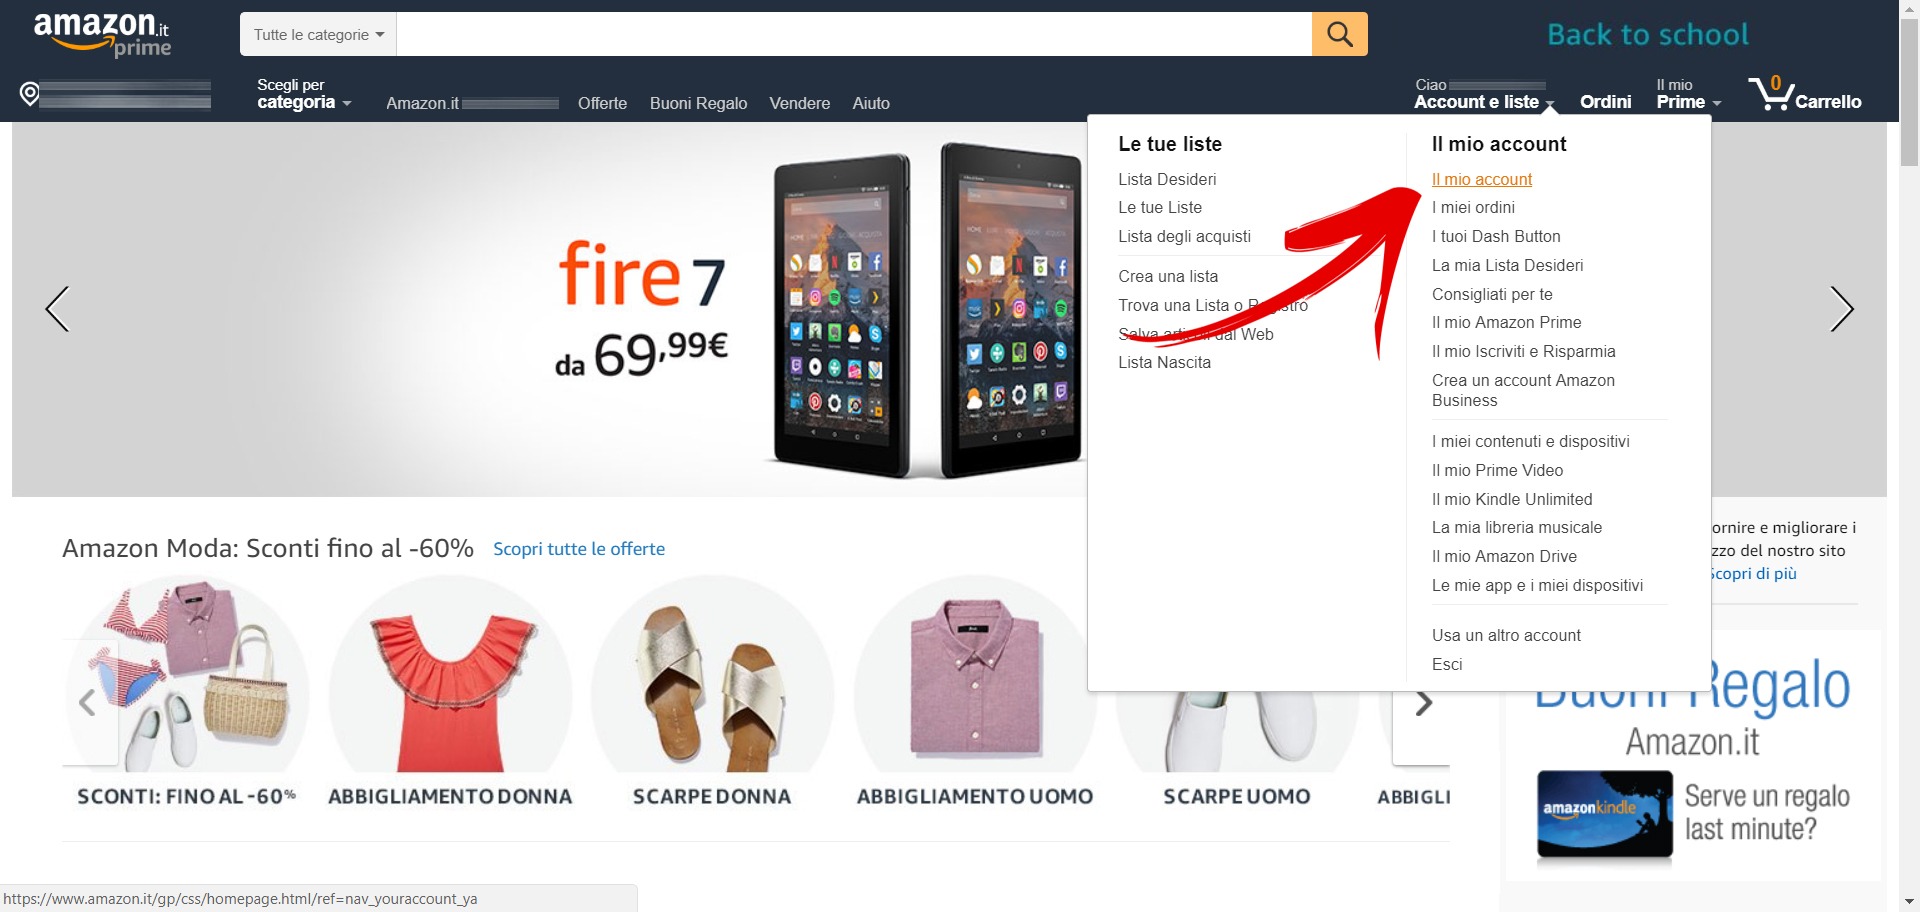 Dove trovare il link del profilo Amazon? – Telegraph